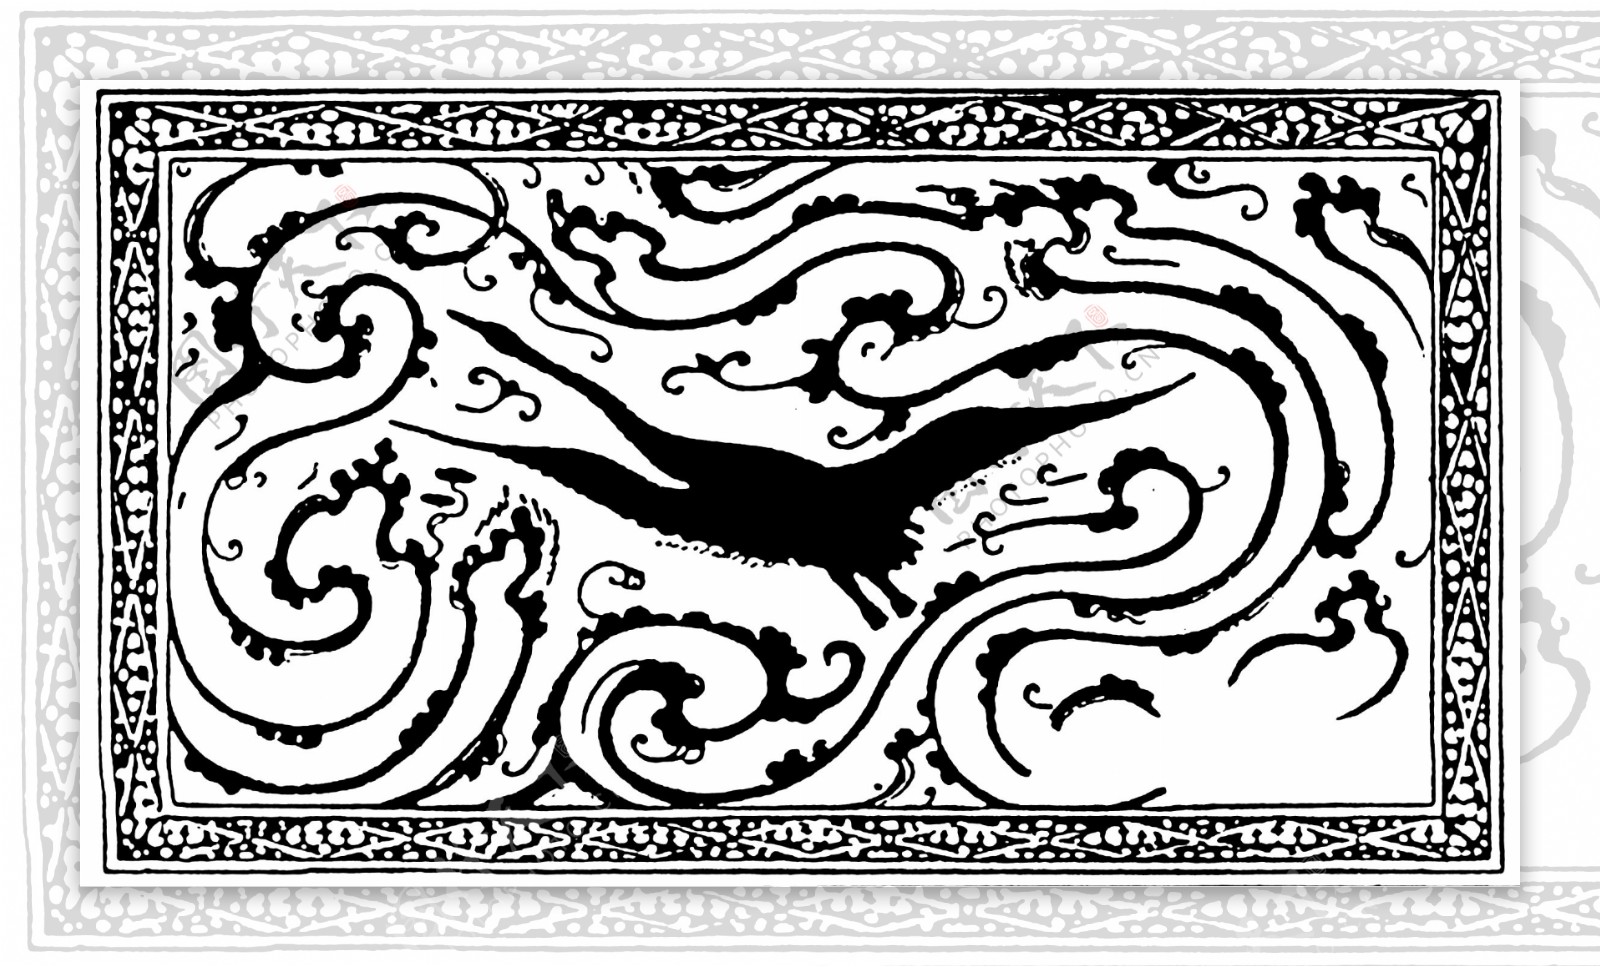 鸟兽纹样传统图案0012